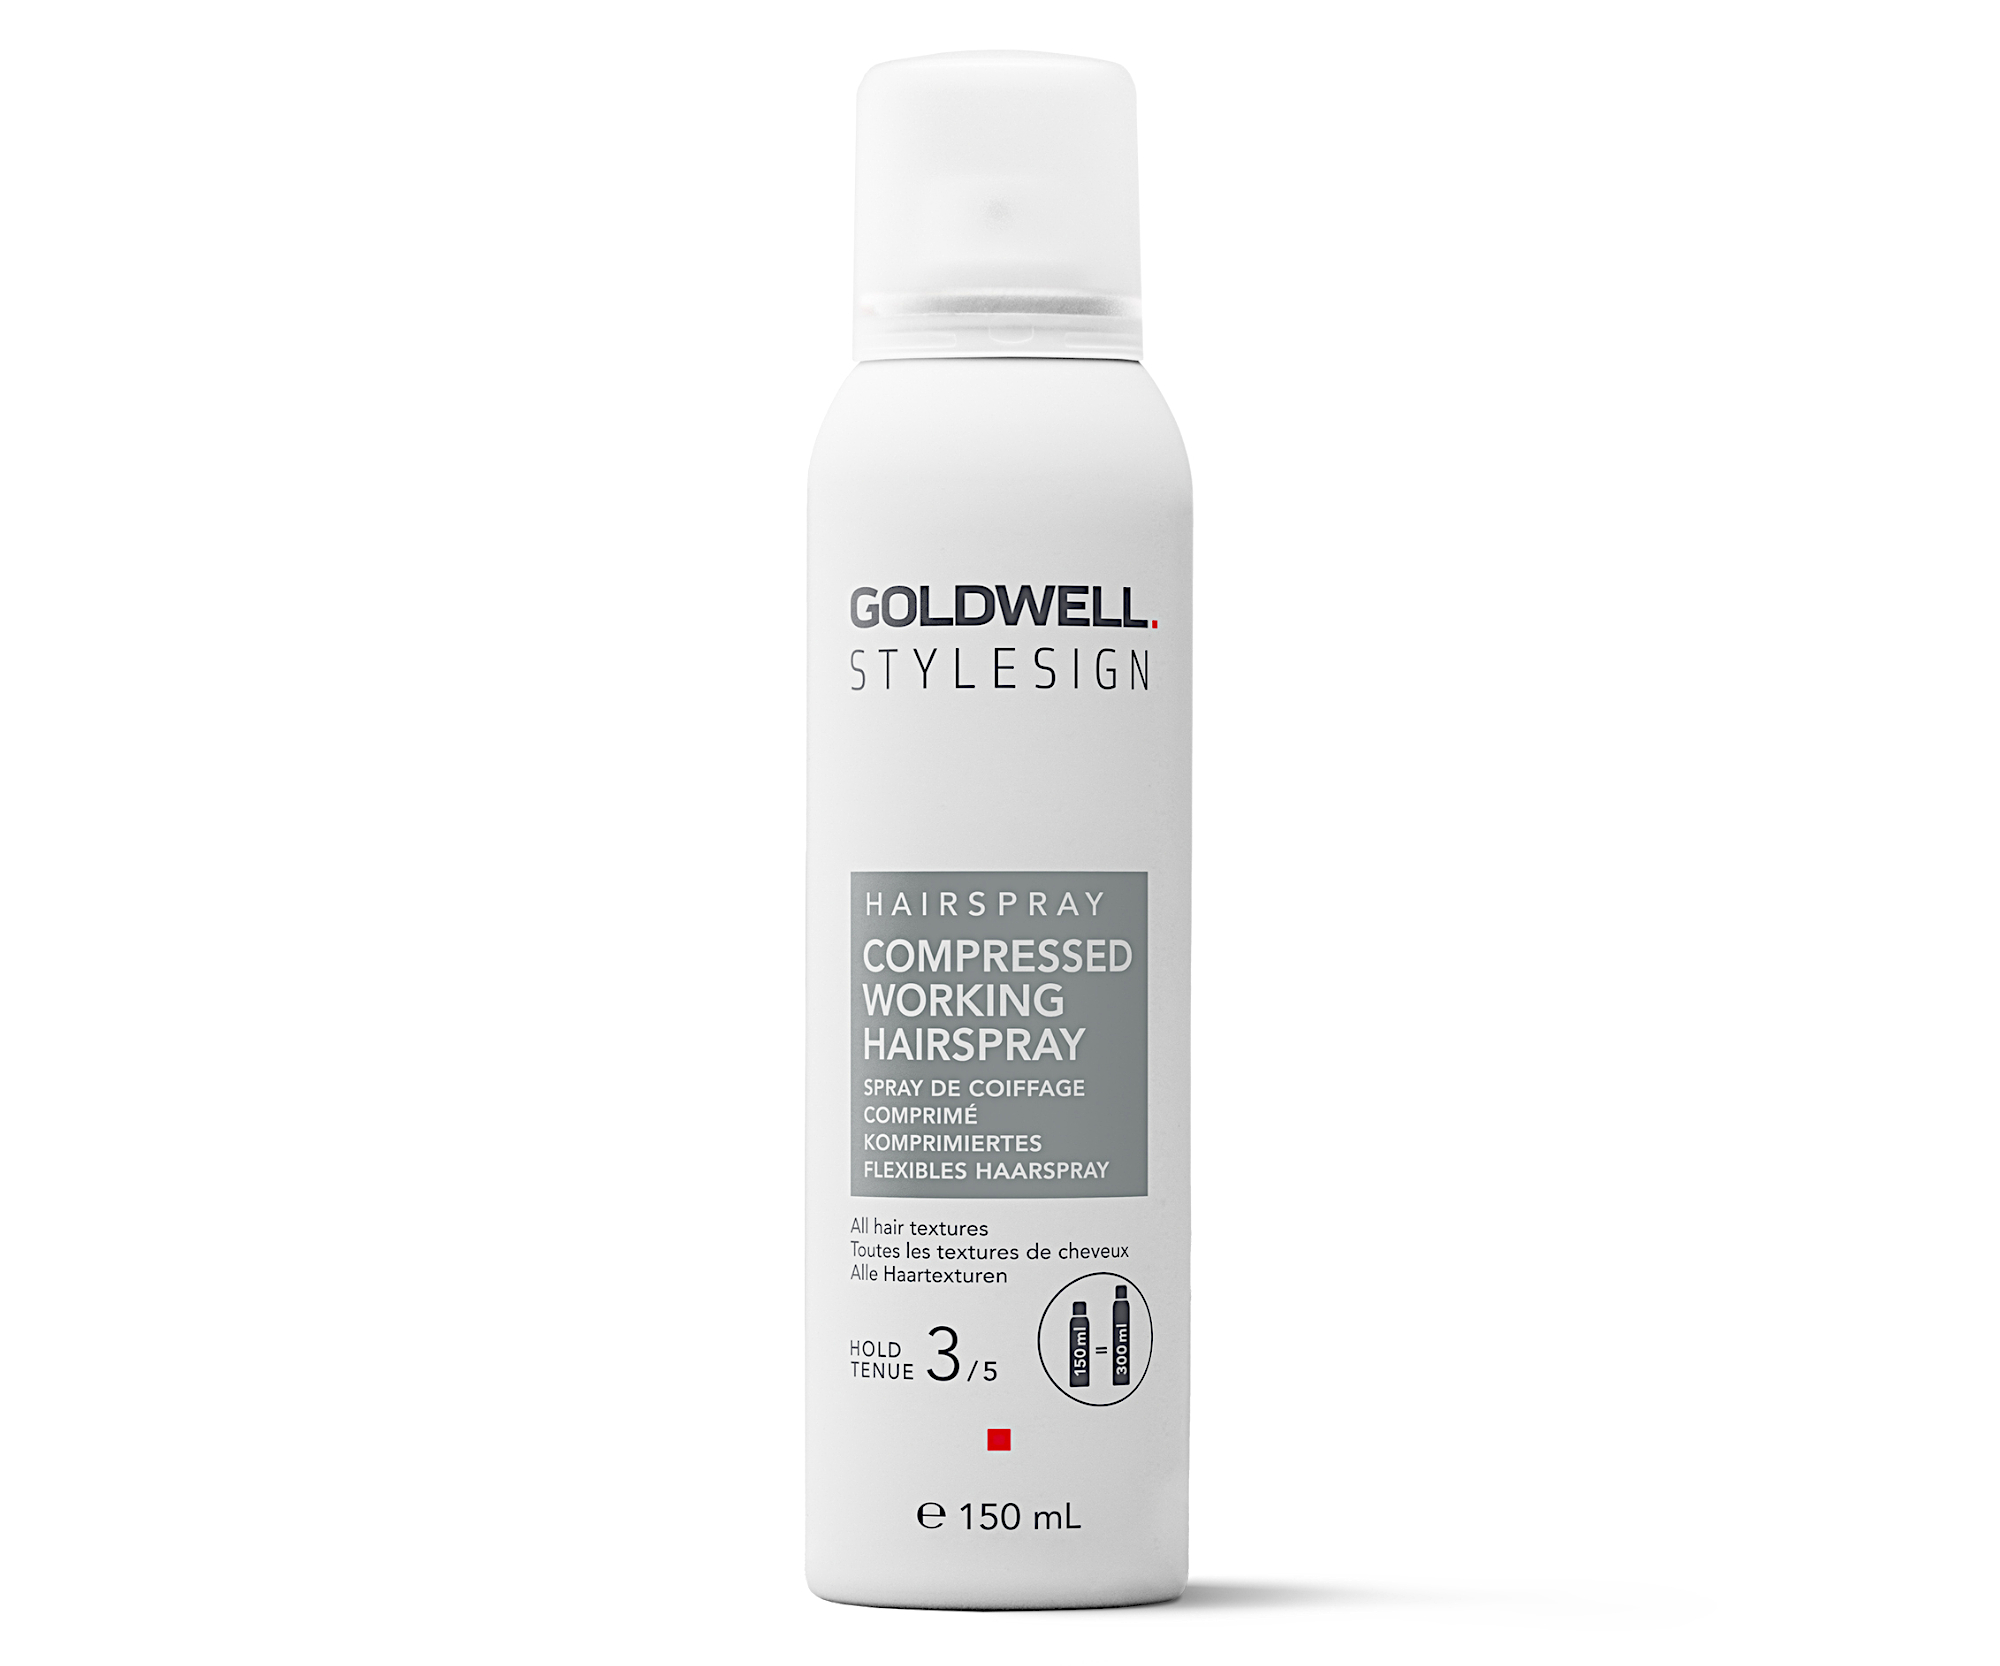 Flexibilní lak na vlasy se střední fixací Goldwell Compressed Working Hairspray - 150 ml + dárek zdarma